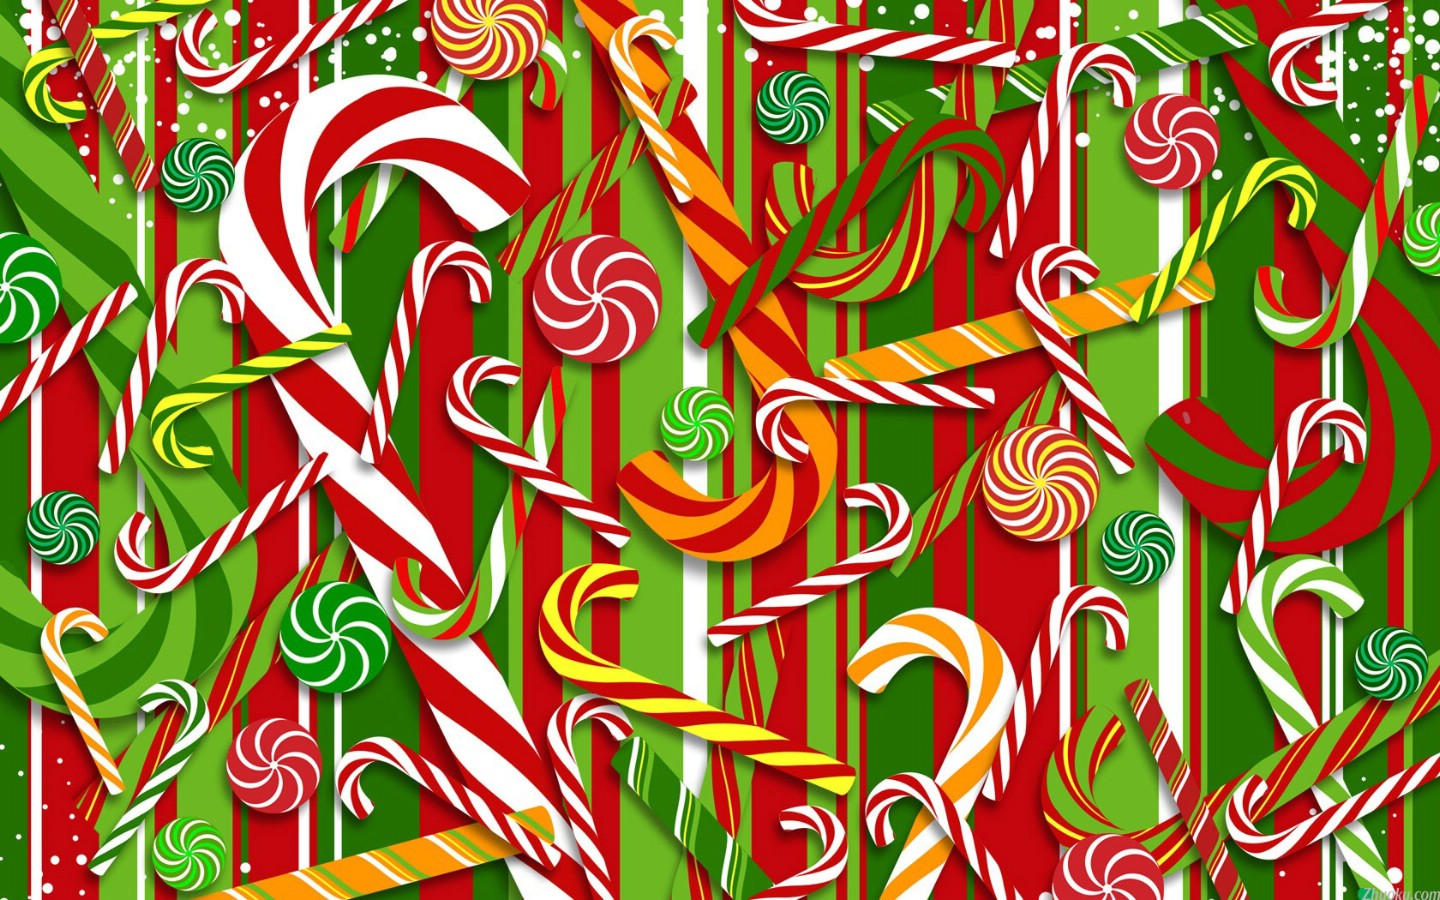 壁纸1440x900电脑绘制圣诞主题 壁纸17壁纸 电脑绘制圣诞主题壁纸 电脑绘制圣诞主题图片 电脑绘制圣诞主题素材 设计壁纸 设计图库 设计图片素材桌面壁纸